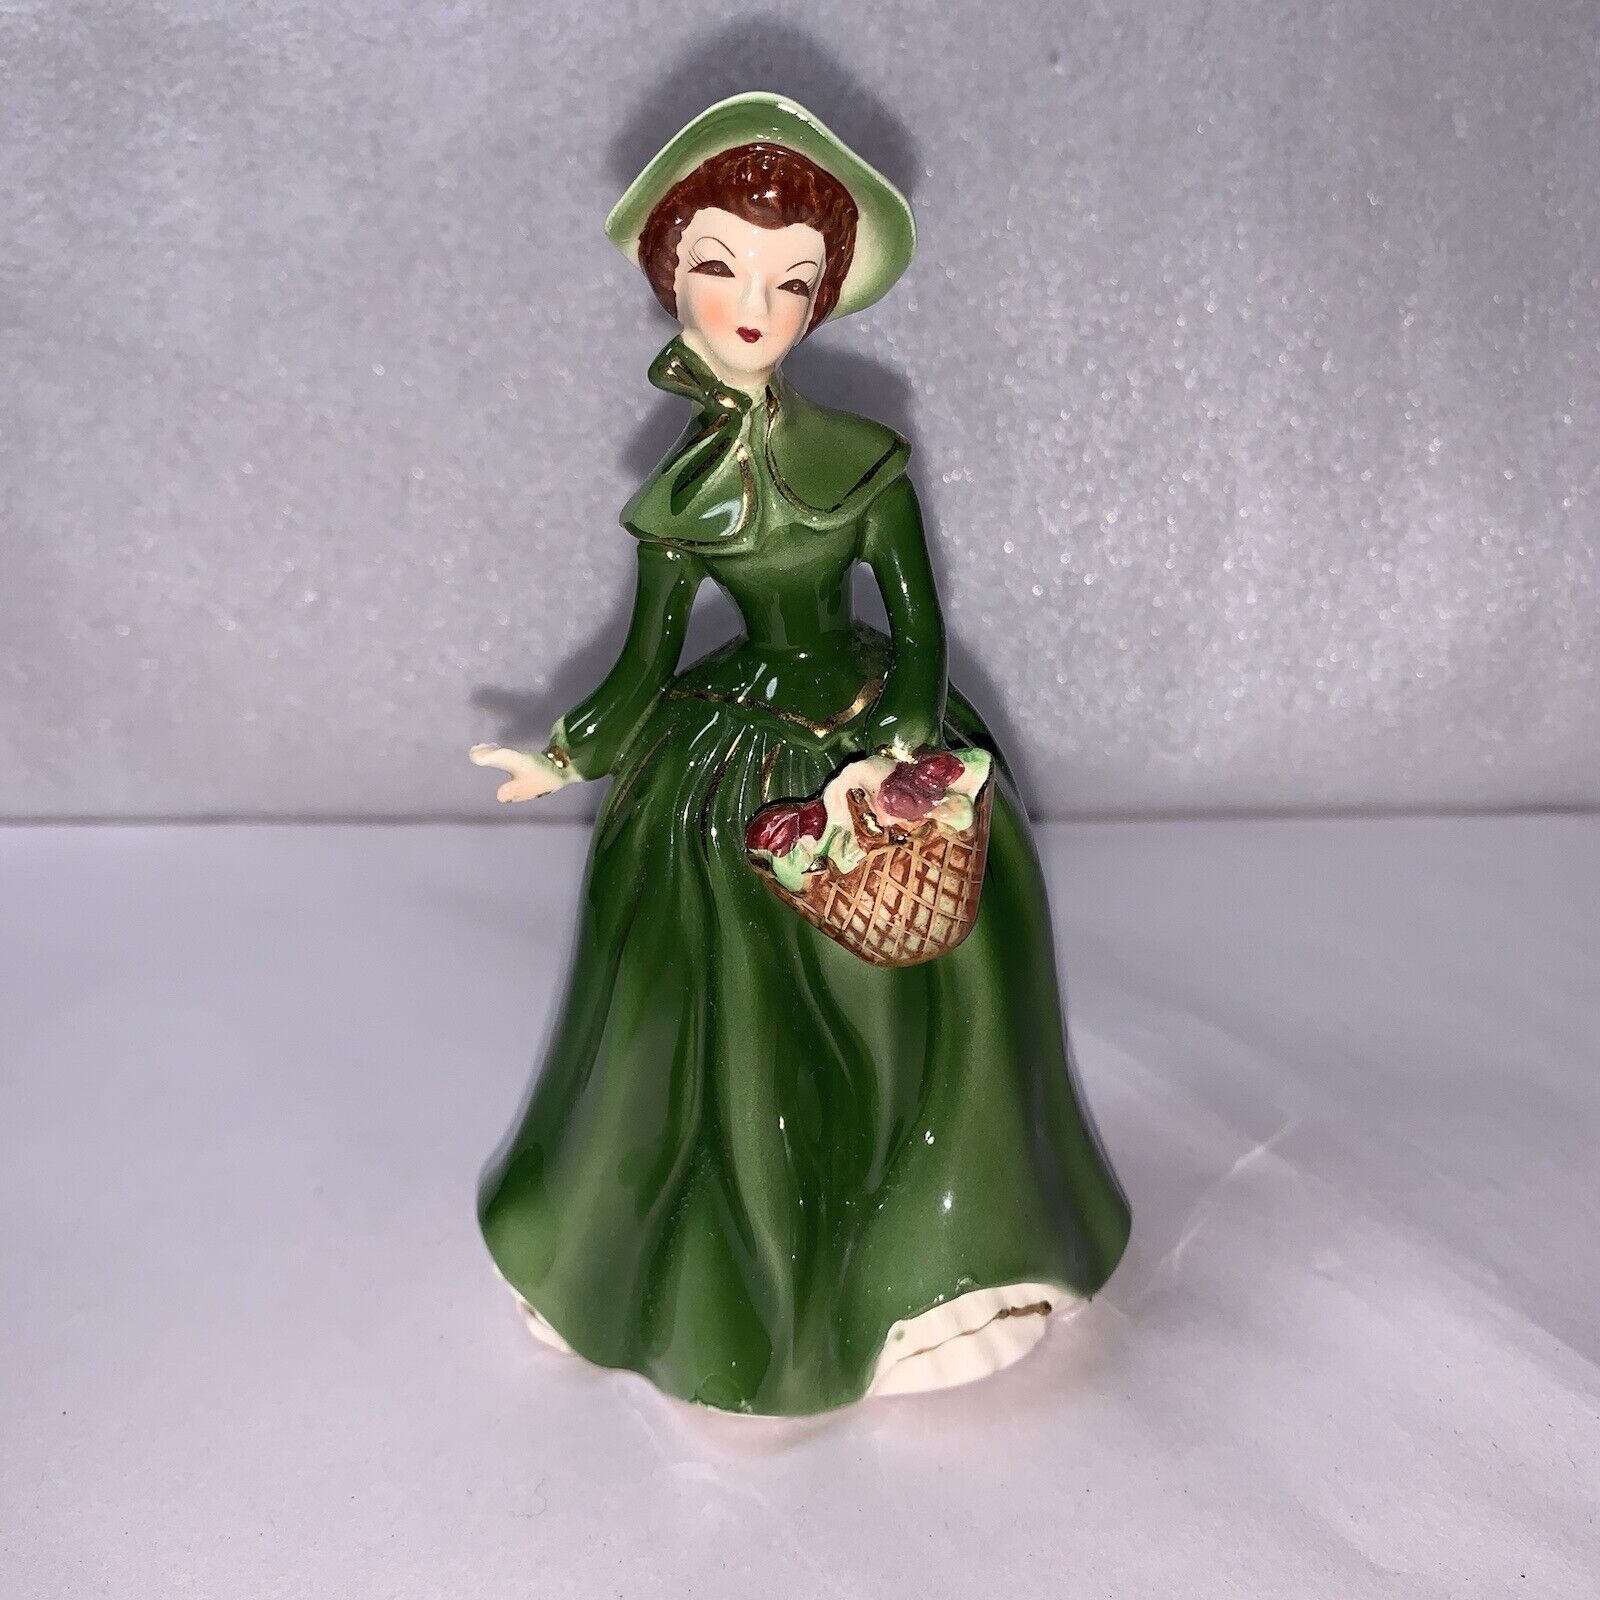 Vintage Lady Figurine Green Dress Hat Basket #2503